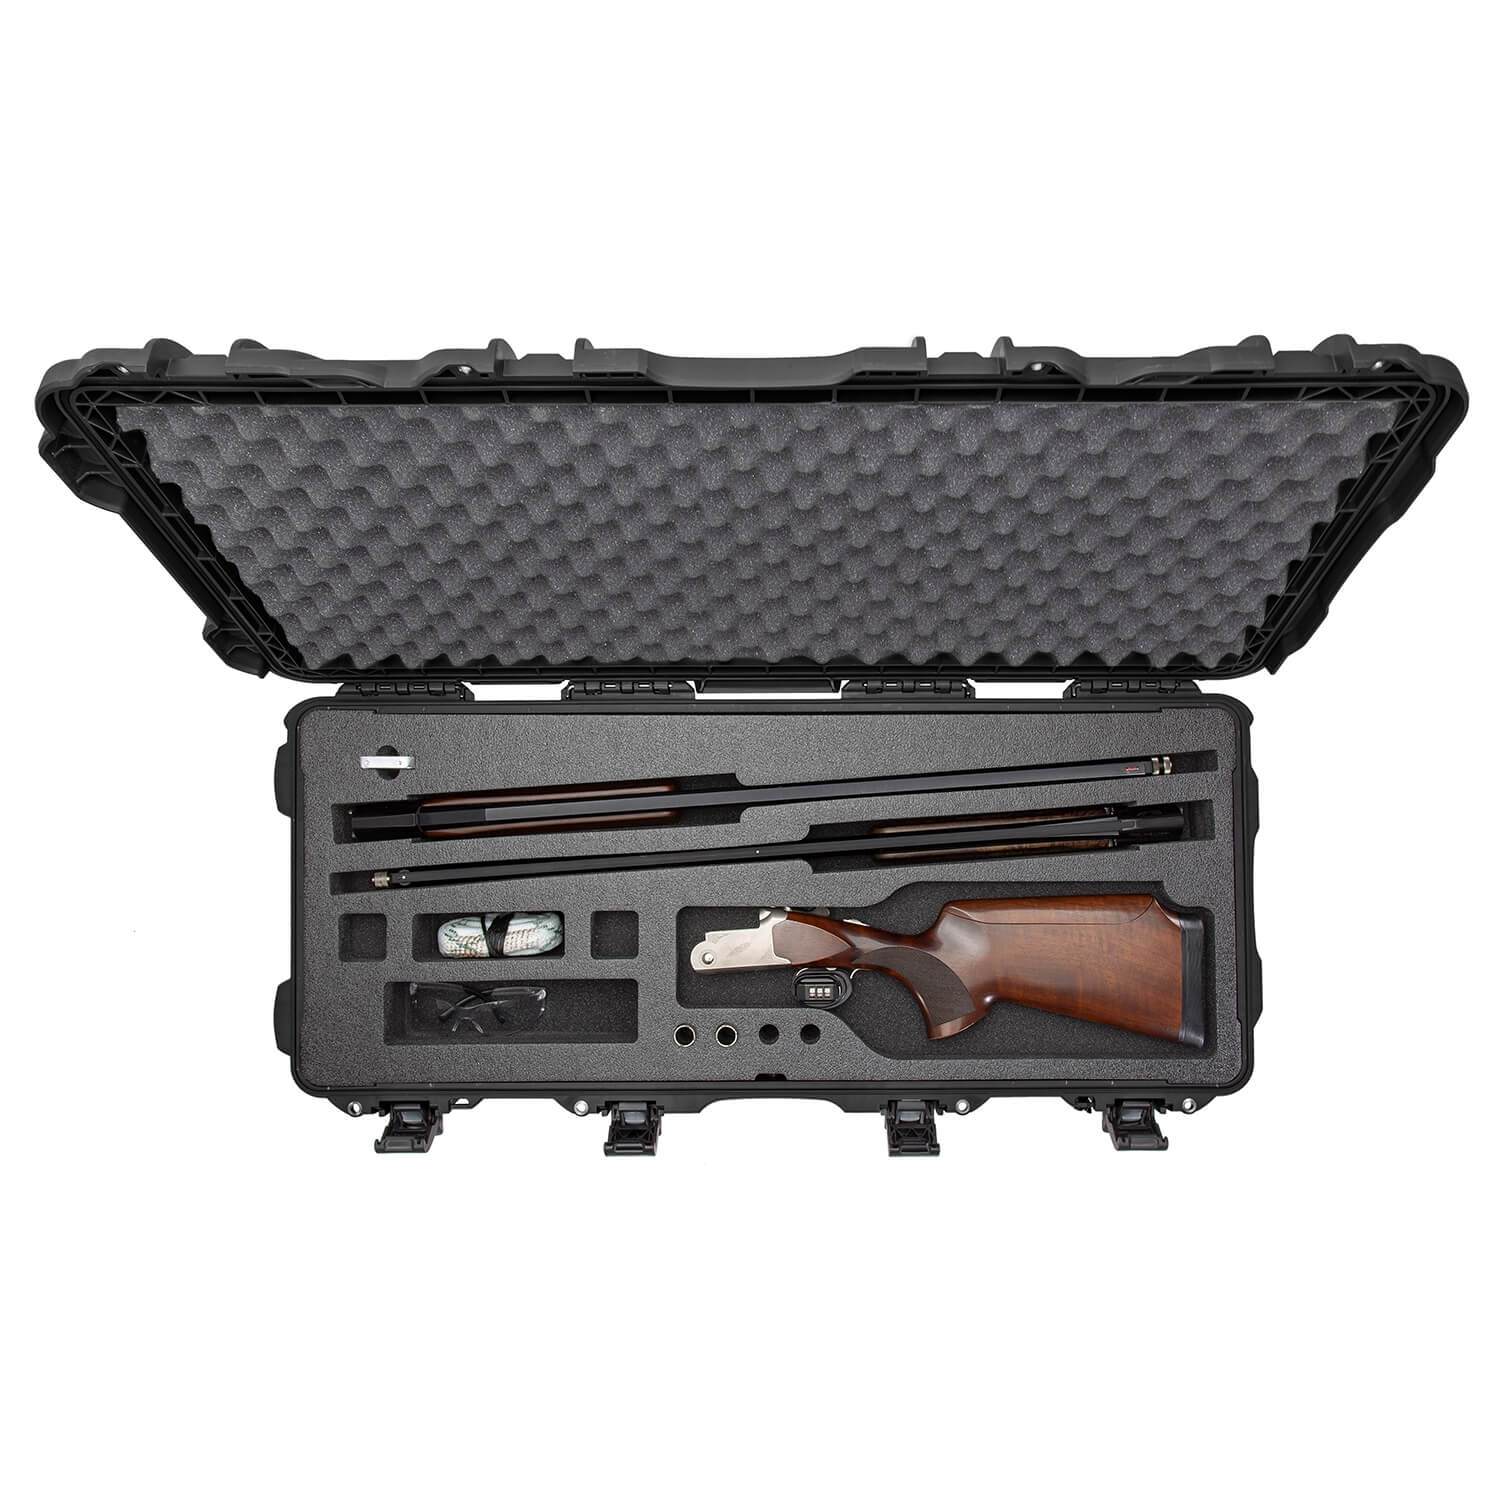 NANUK 985 valise de fusil de chasse démonté - valise de fusil de chasse - Noir - NANUK